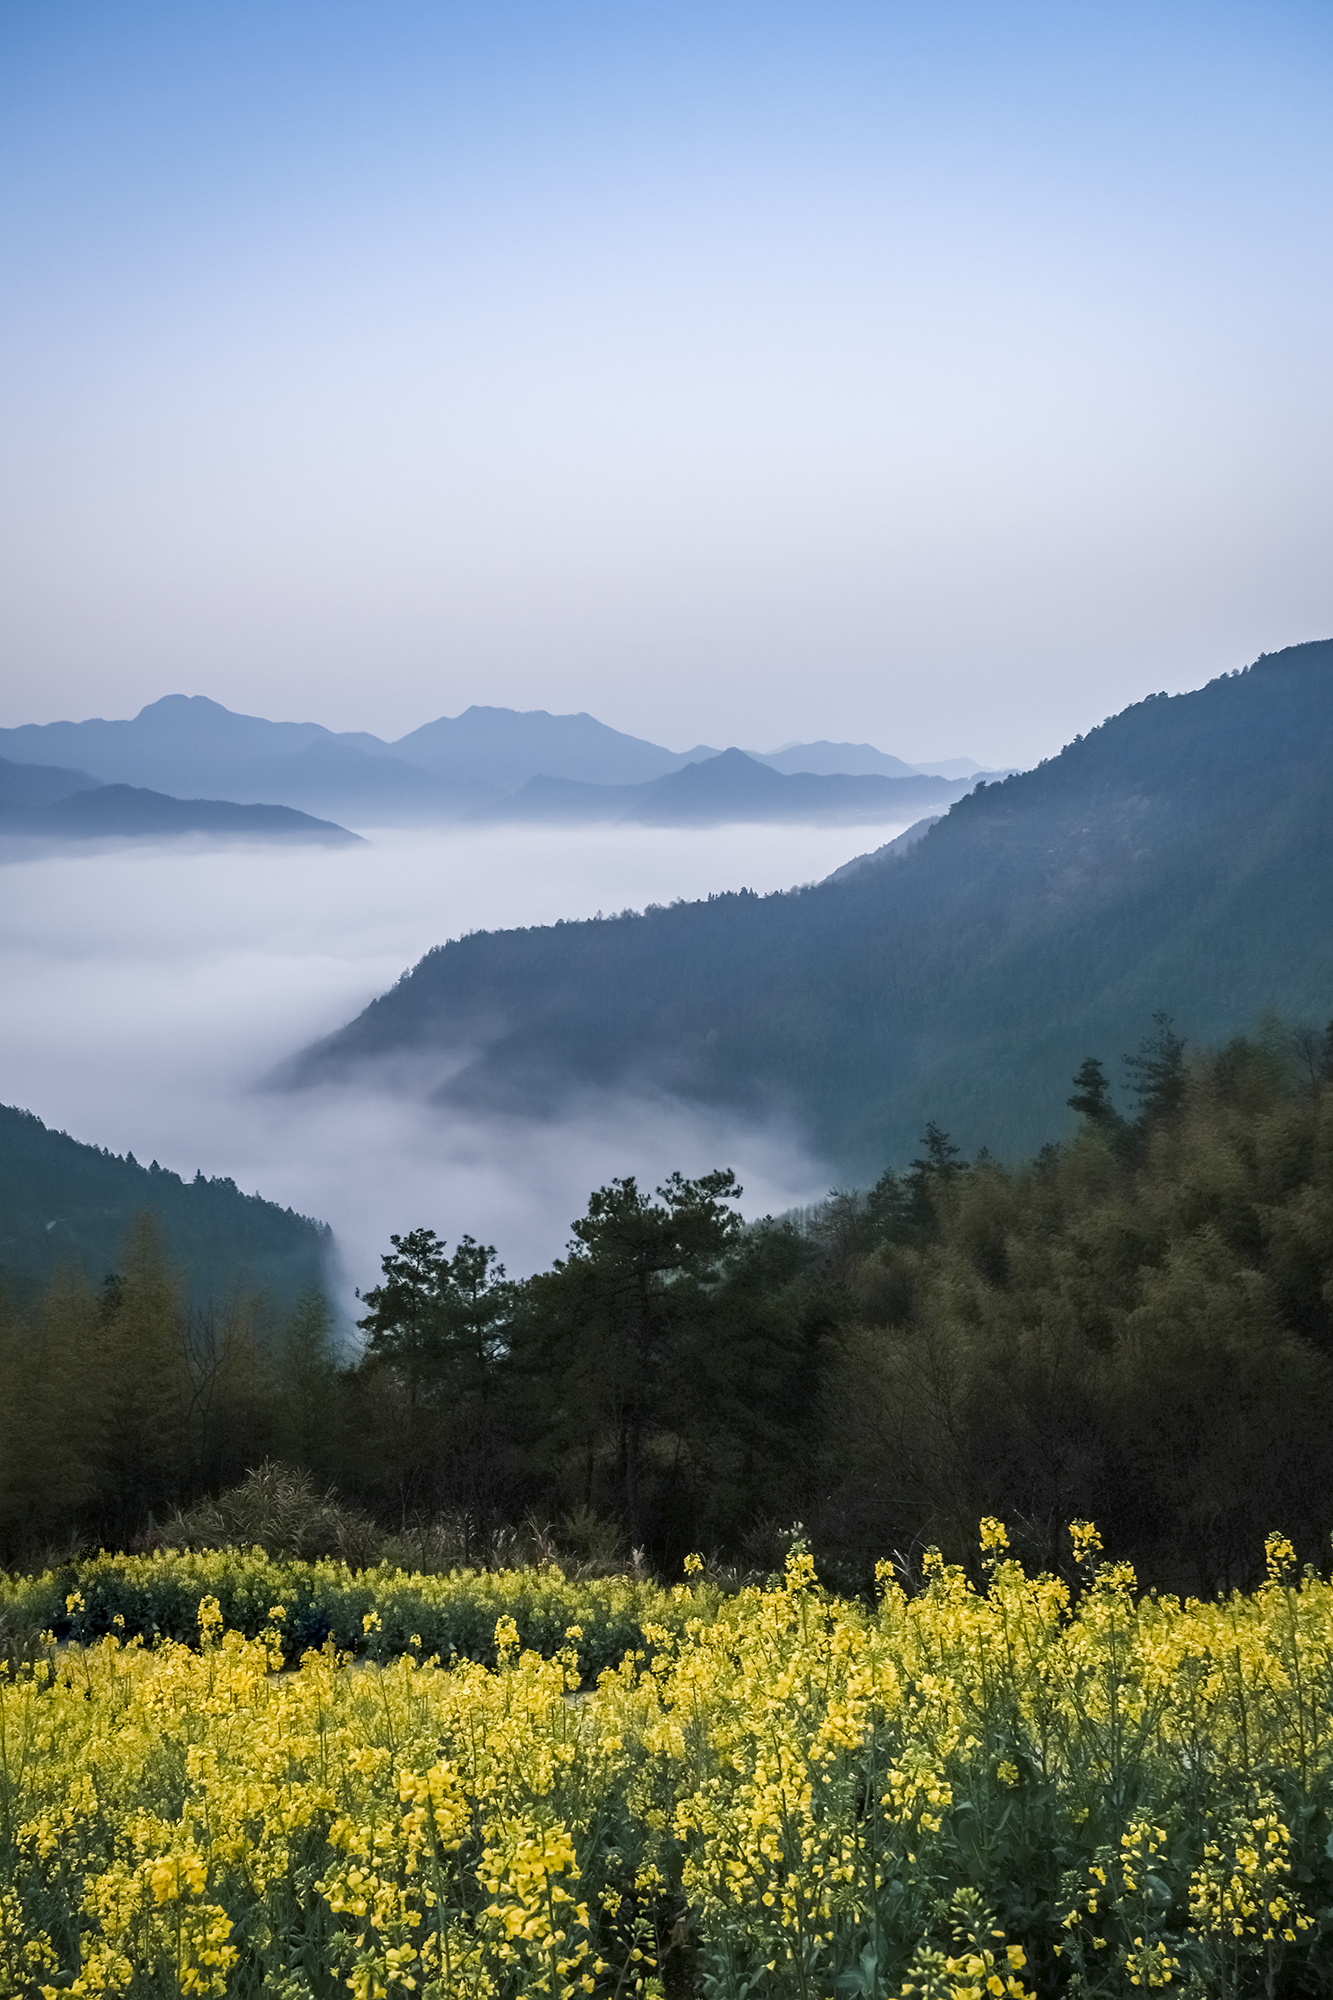 黛色的青山峰峦叠嶂,弥漫的薄雾轻飞缭绕,粉色桃花和黄色的油菜花交相